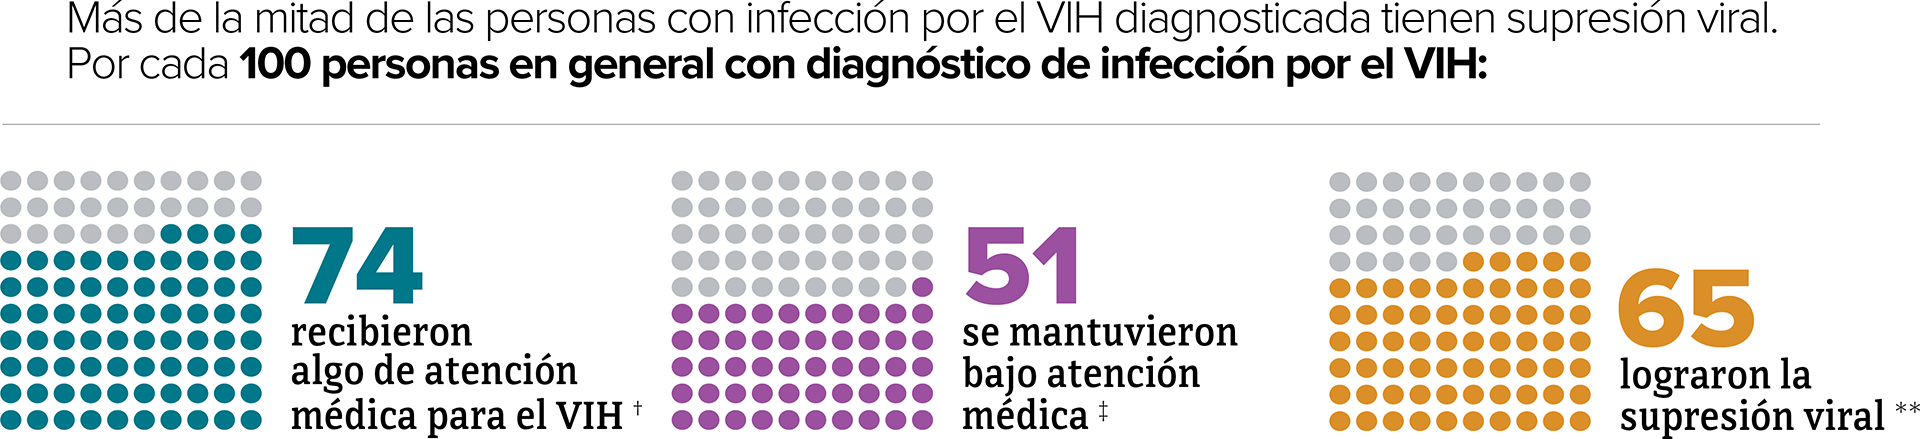 Este gráfico muestra la proporción de personas con diagnóstico de infección por el VIH que recibieron algo de atención médica para el VIH, se mantuvieron bajo atención médica y tenían supresión viral.